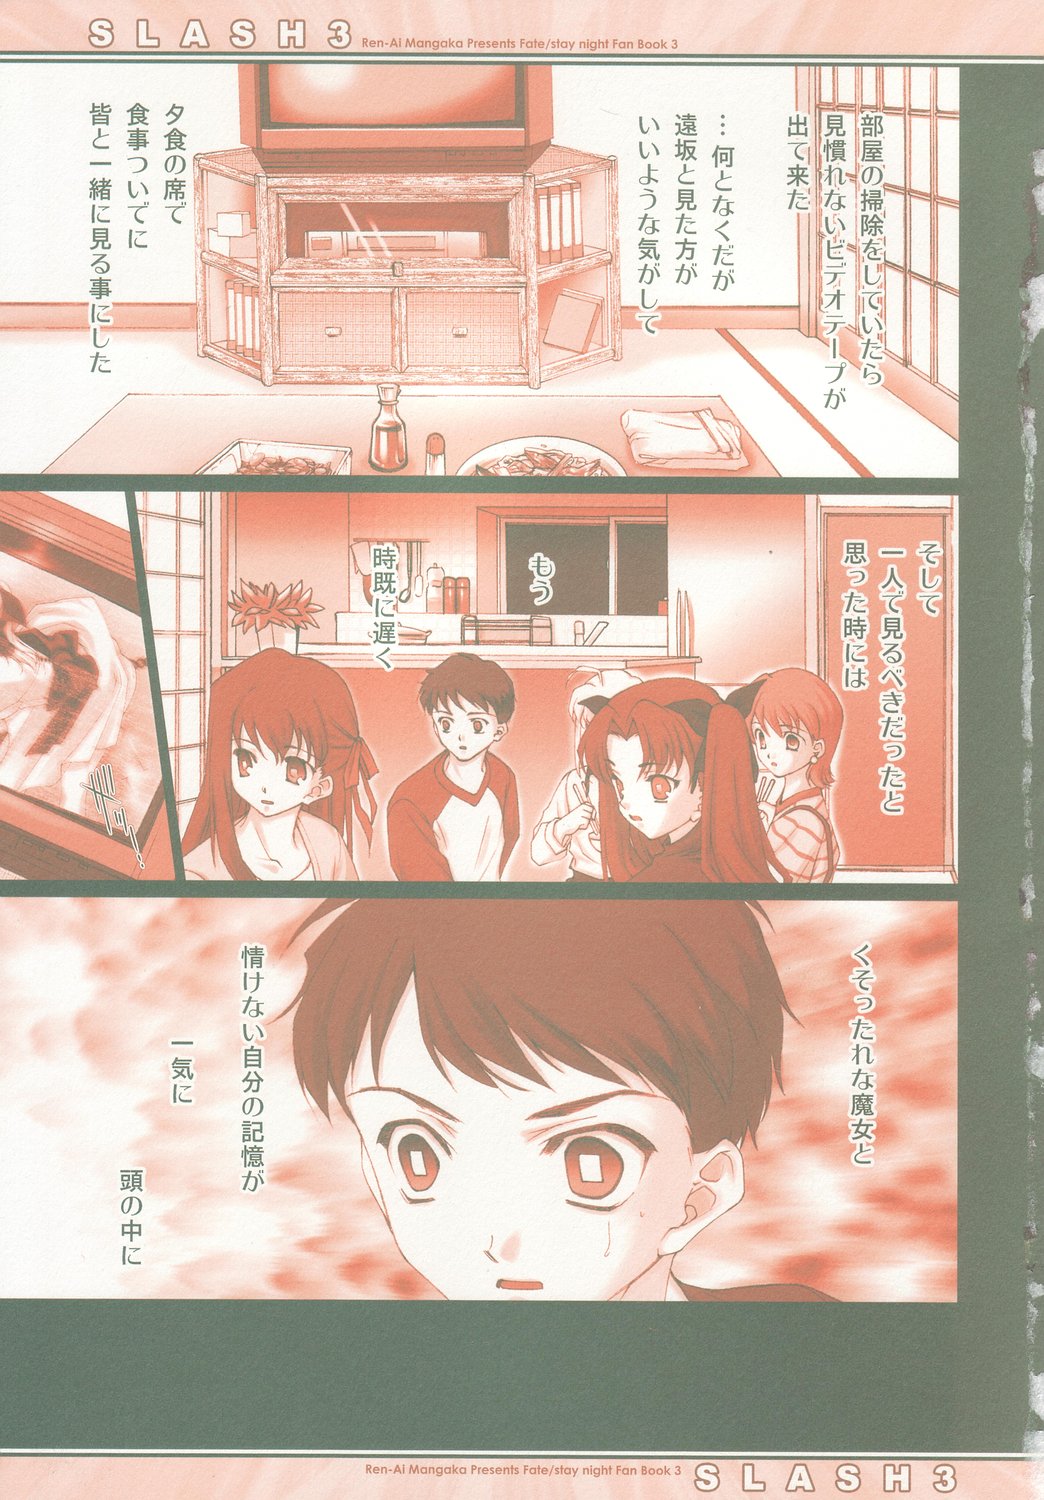 (C66) [Renai Mangaka (Naruse Hirofumi)] SLASH 3 (Fate/stay night) page 6 full